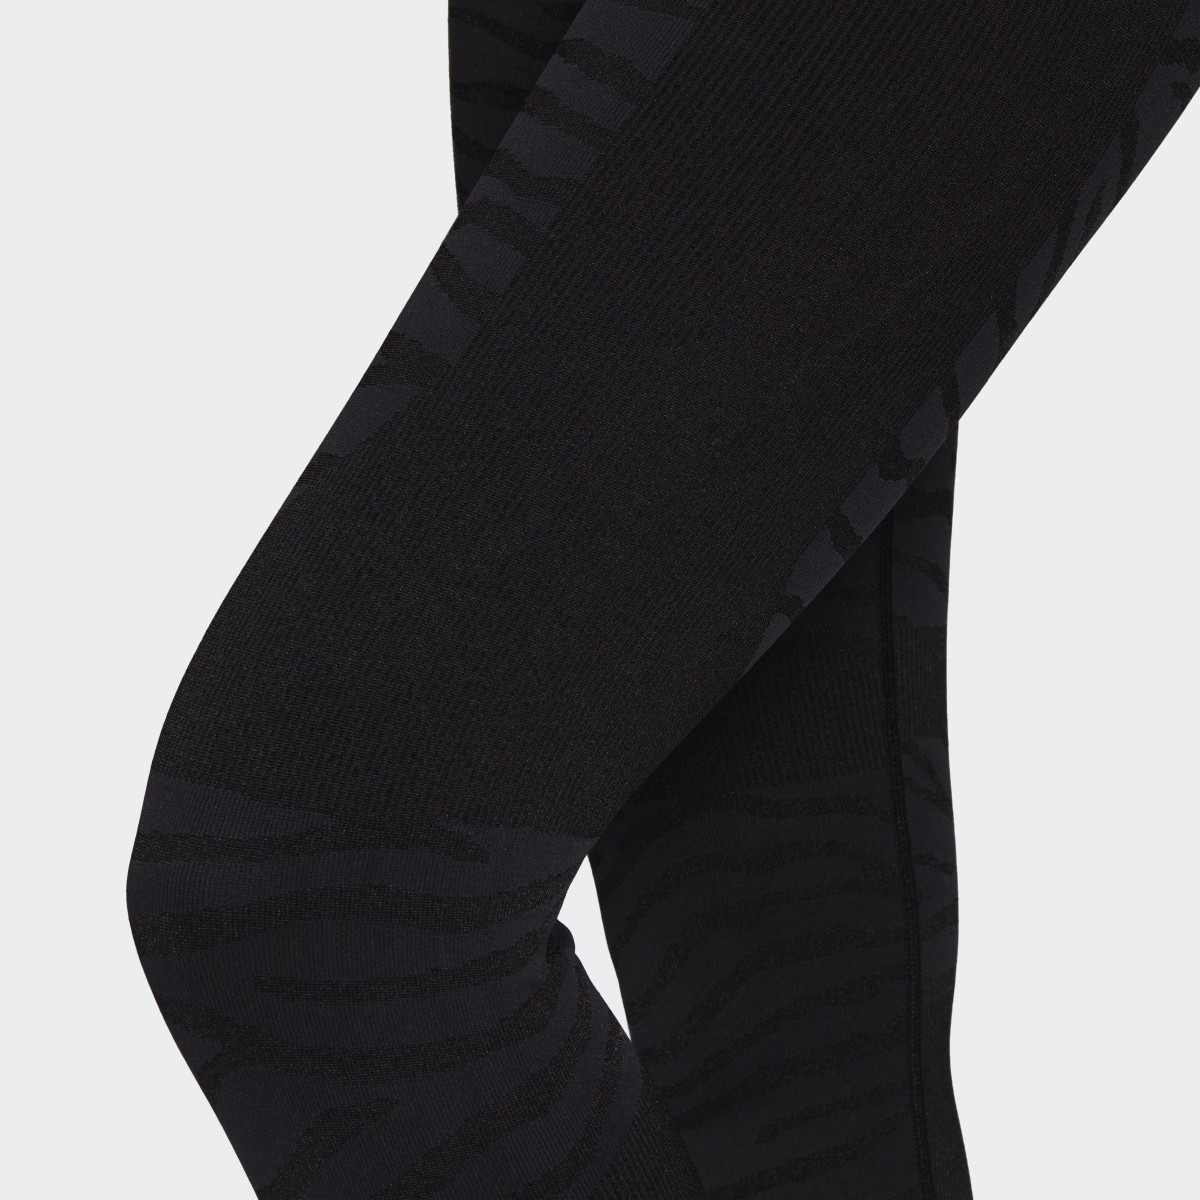 Adidas by Stella McCartney Seamless Yoga Tights. 7